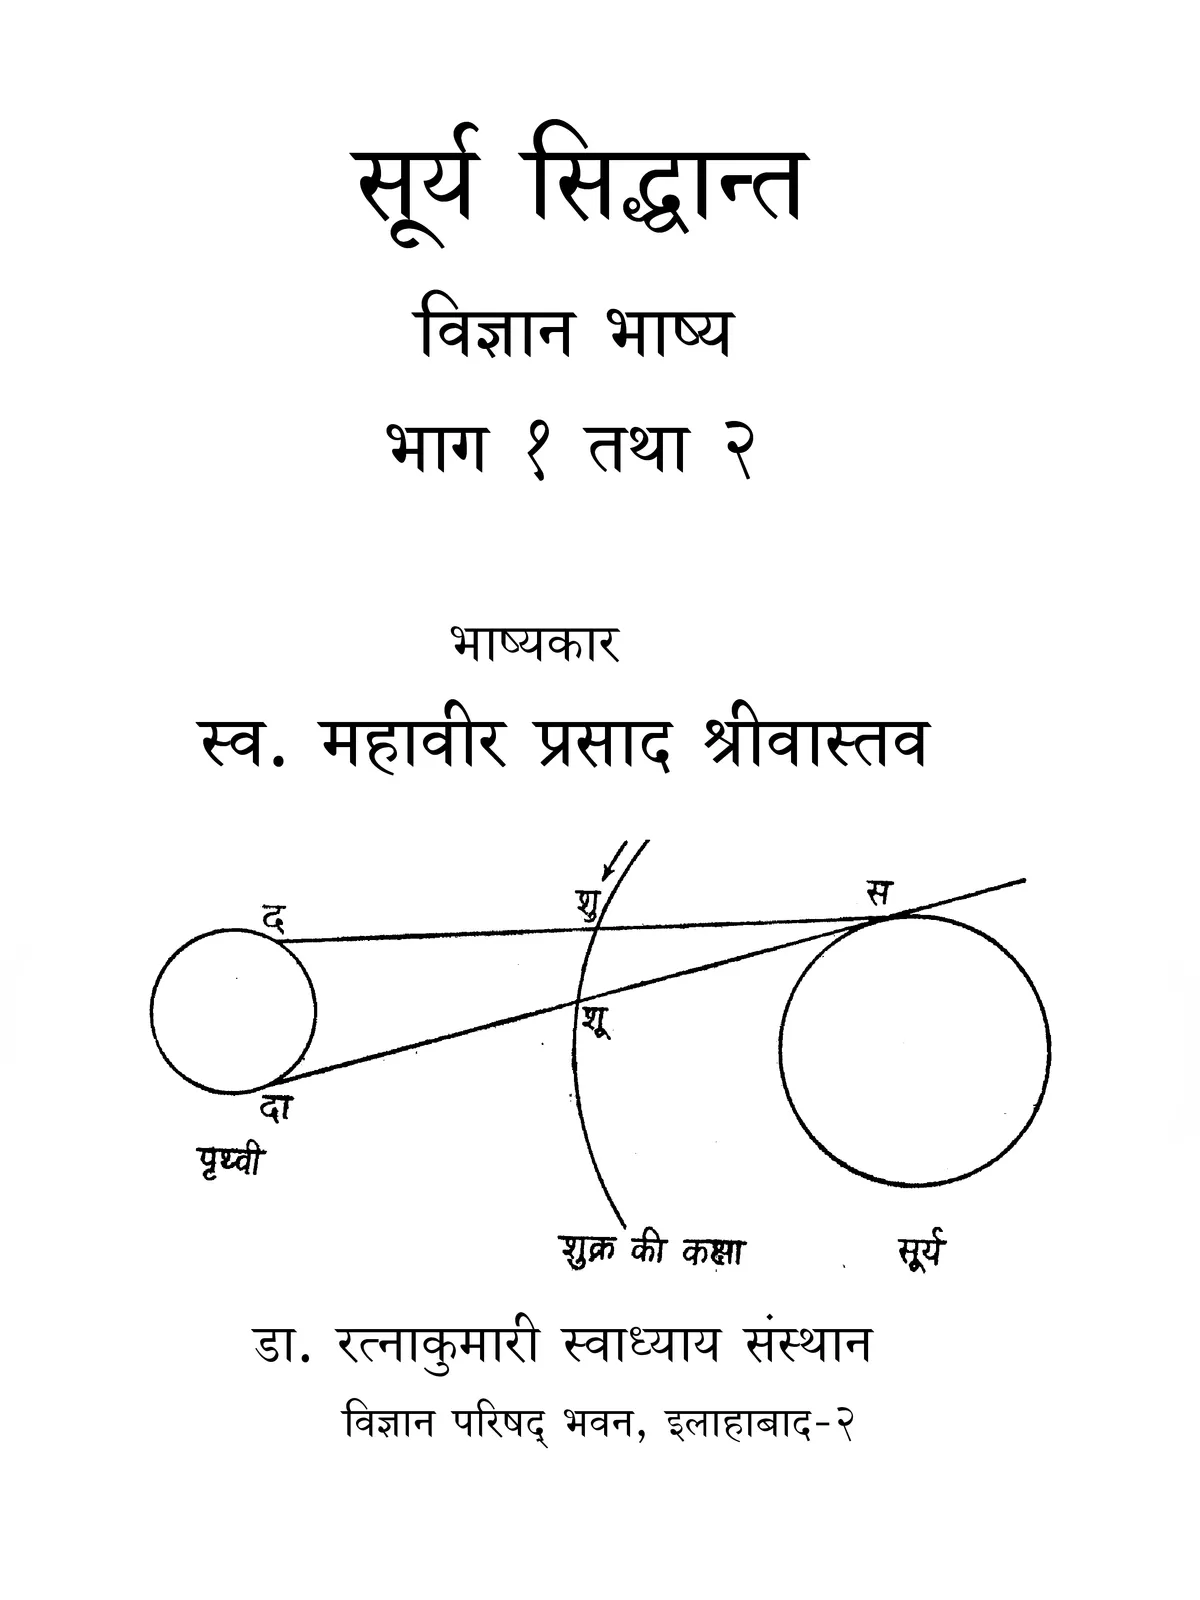 सूर्य सिद्धांत – Surya Siddhanta